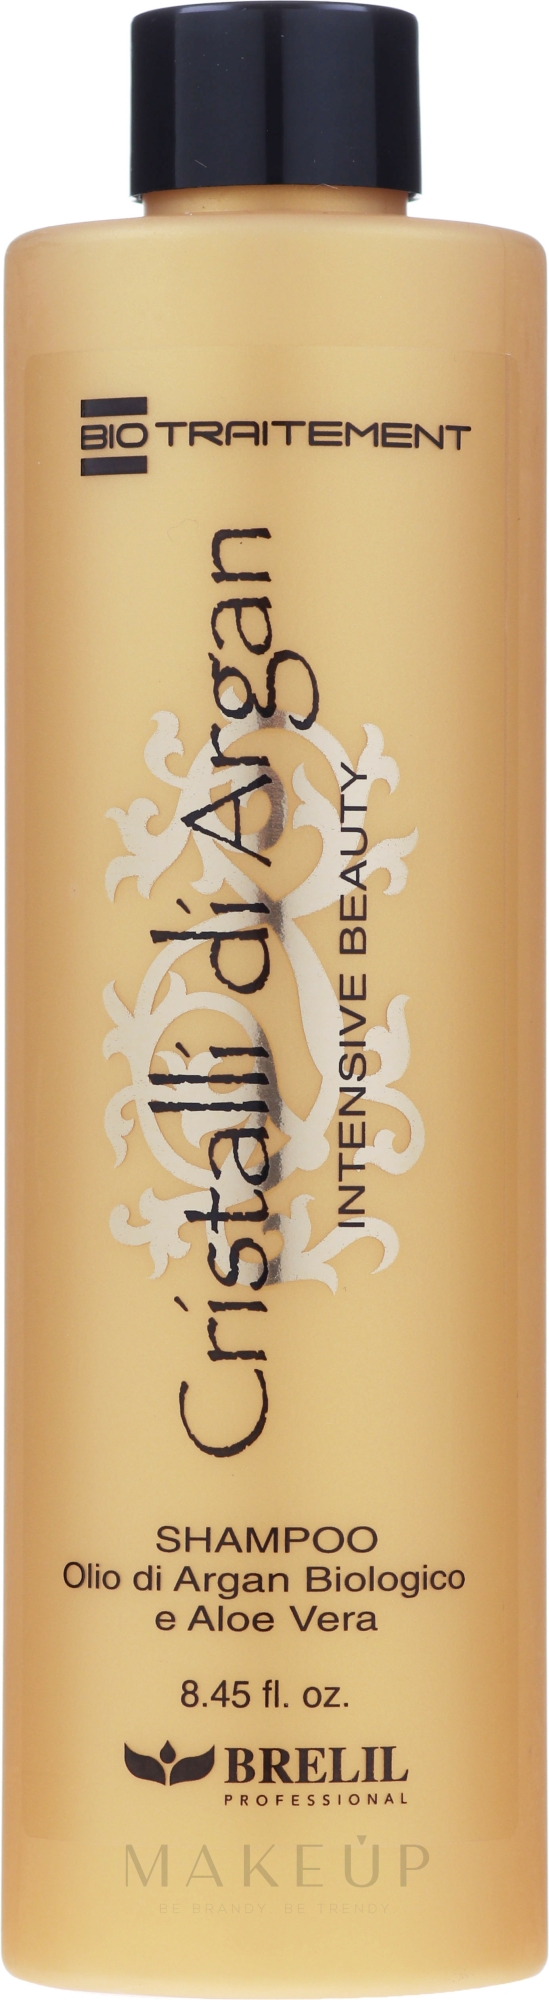 Feuchtigkeitsspendendes Shampoo mit Arganöl und Aloe Vera - Brelil Bio Traitement Cristalli d'Argan Shampoo Intensive Beauty — Foto 250 ml